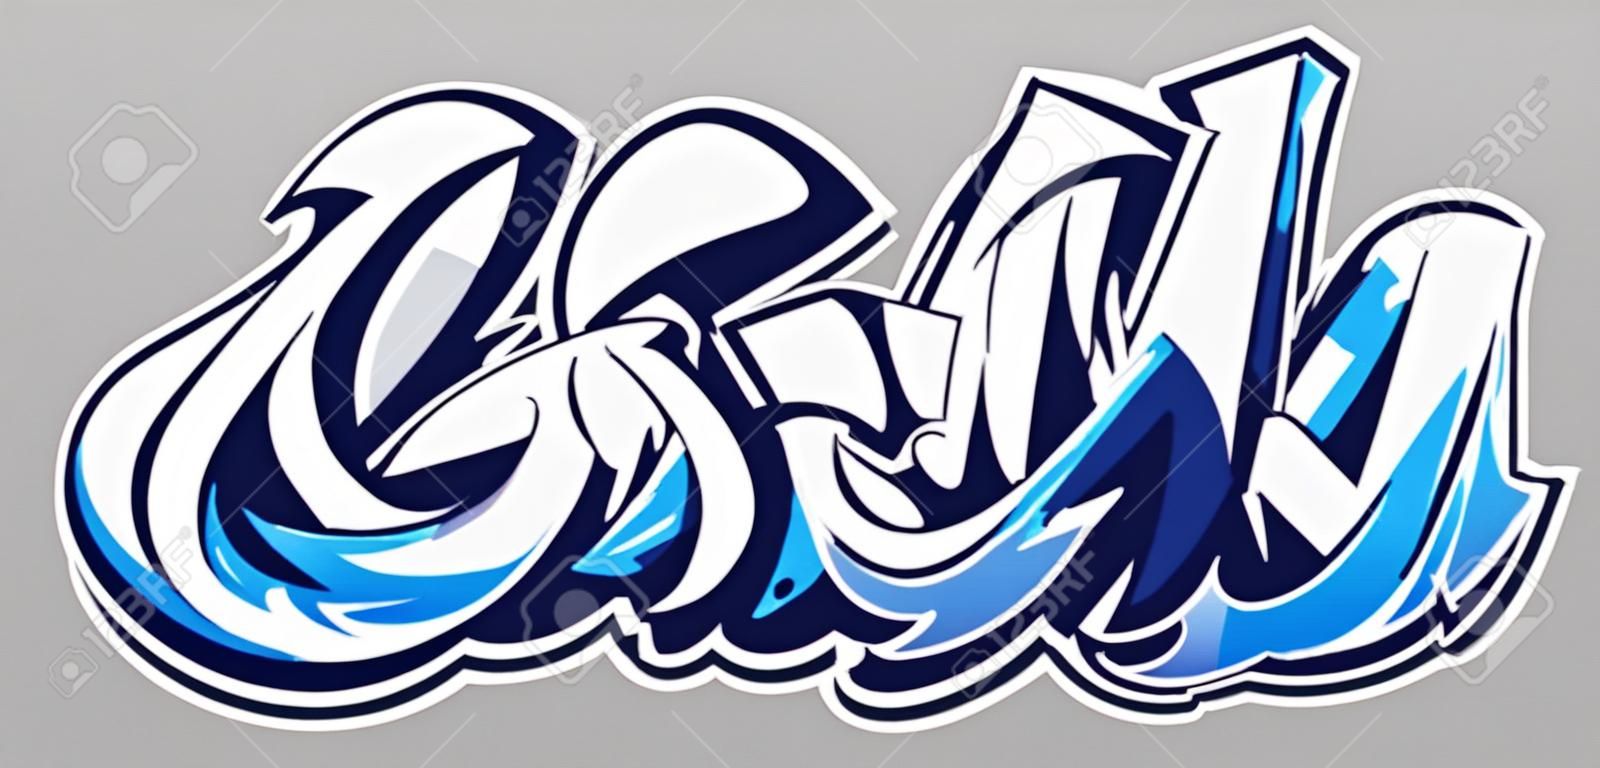 Iscrizione di vettore di colore blu Big Up su sfondo grigio. Arte dei graffiti in stile selvaggio dinamico. Illustrazione astratta tridimensionale delle lettere.